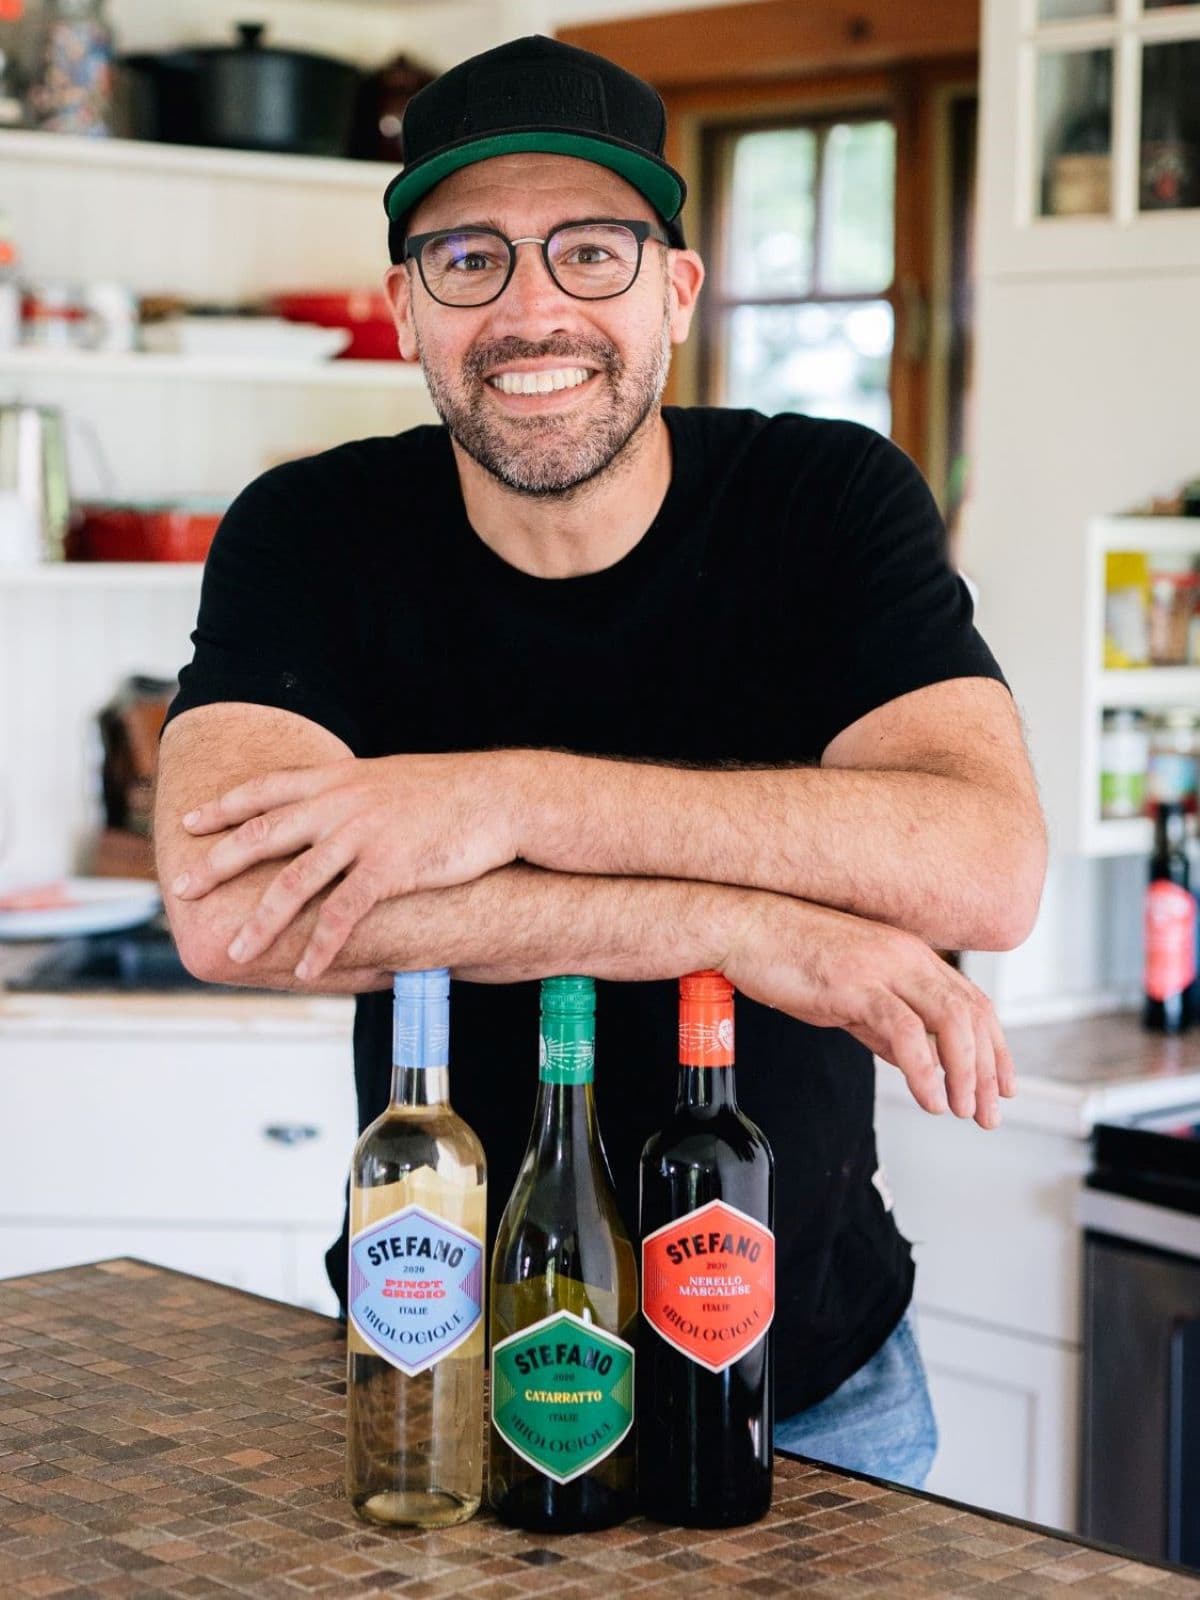 Stefano Faita dans sa cuisine avec ses vins biologiques Crédit Patricia Brochu